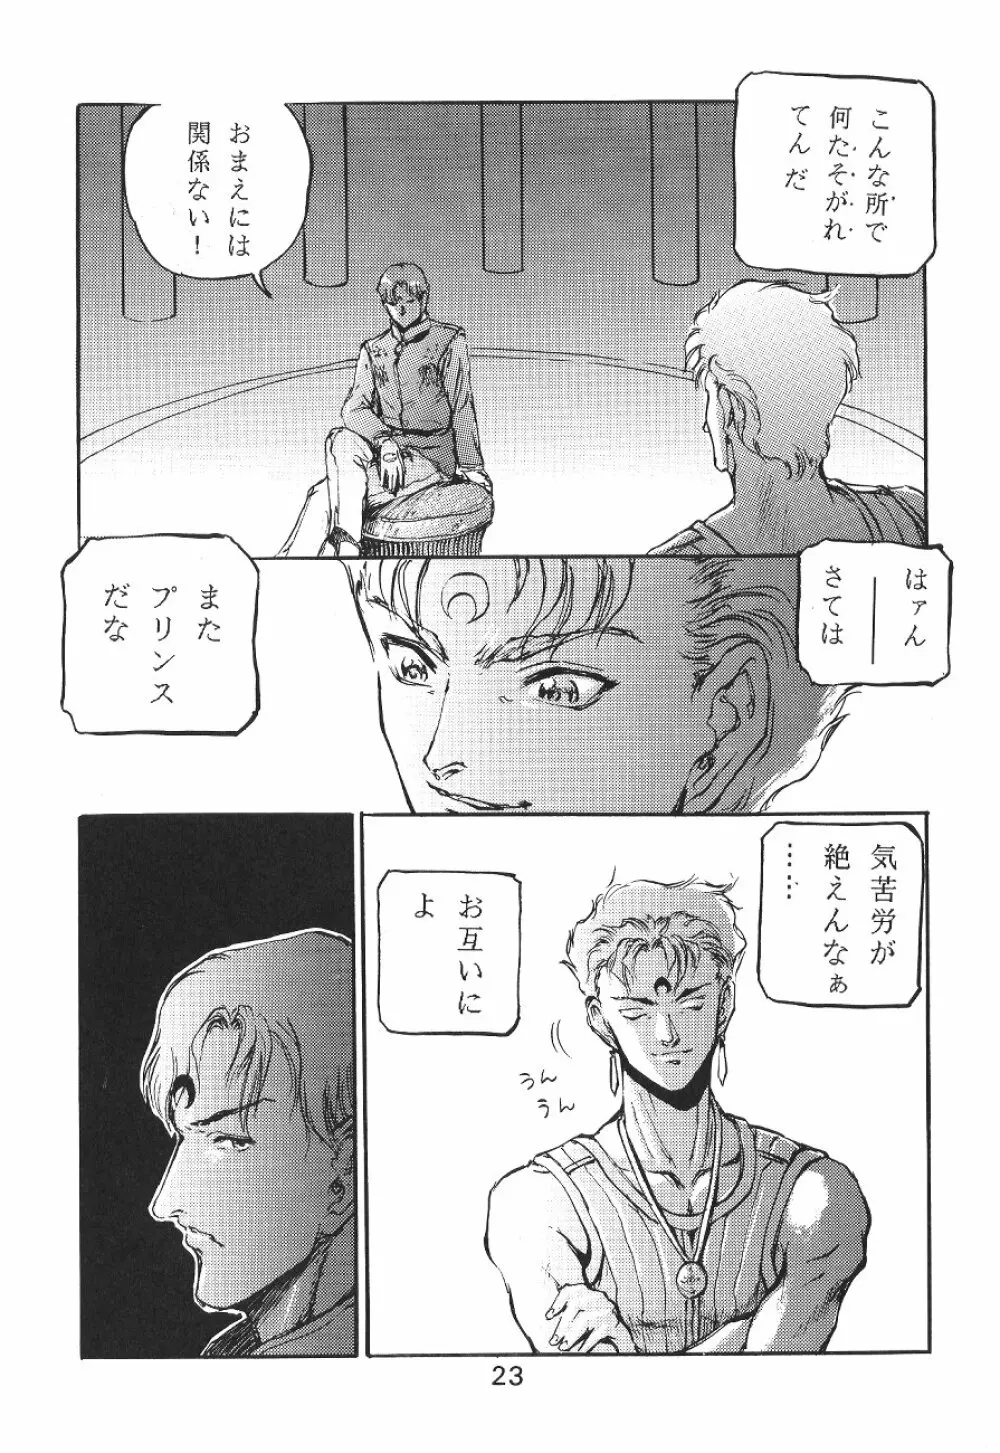 KATZE 7 上巻 - page23